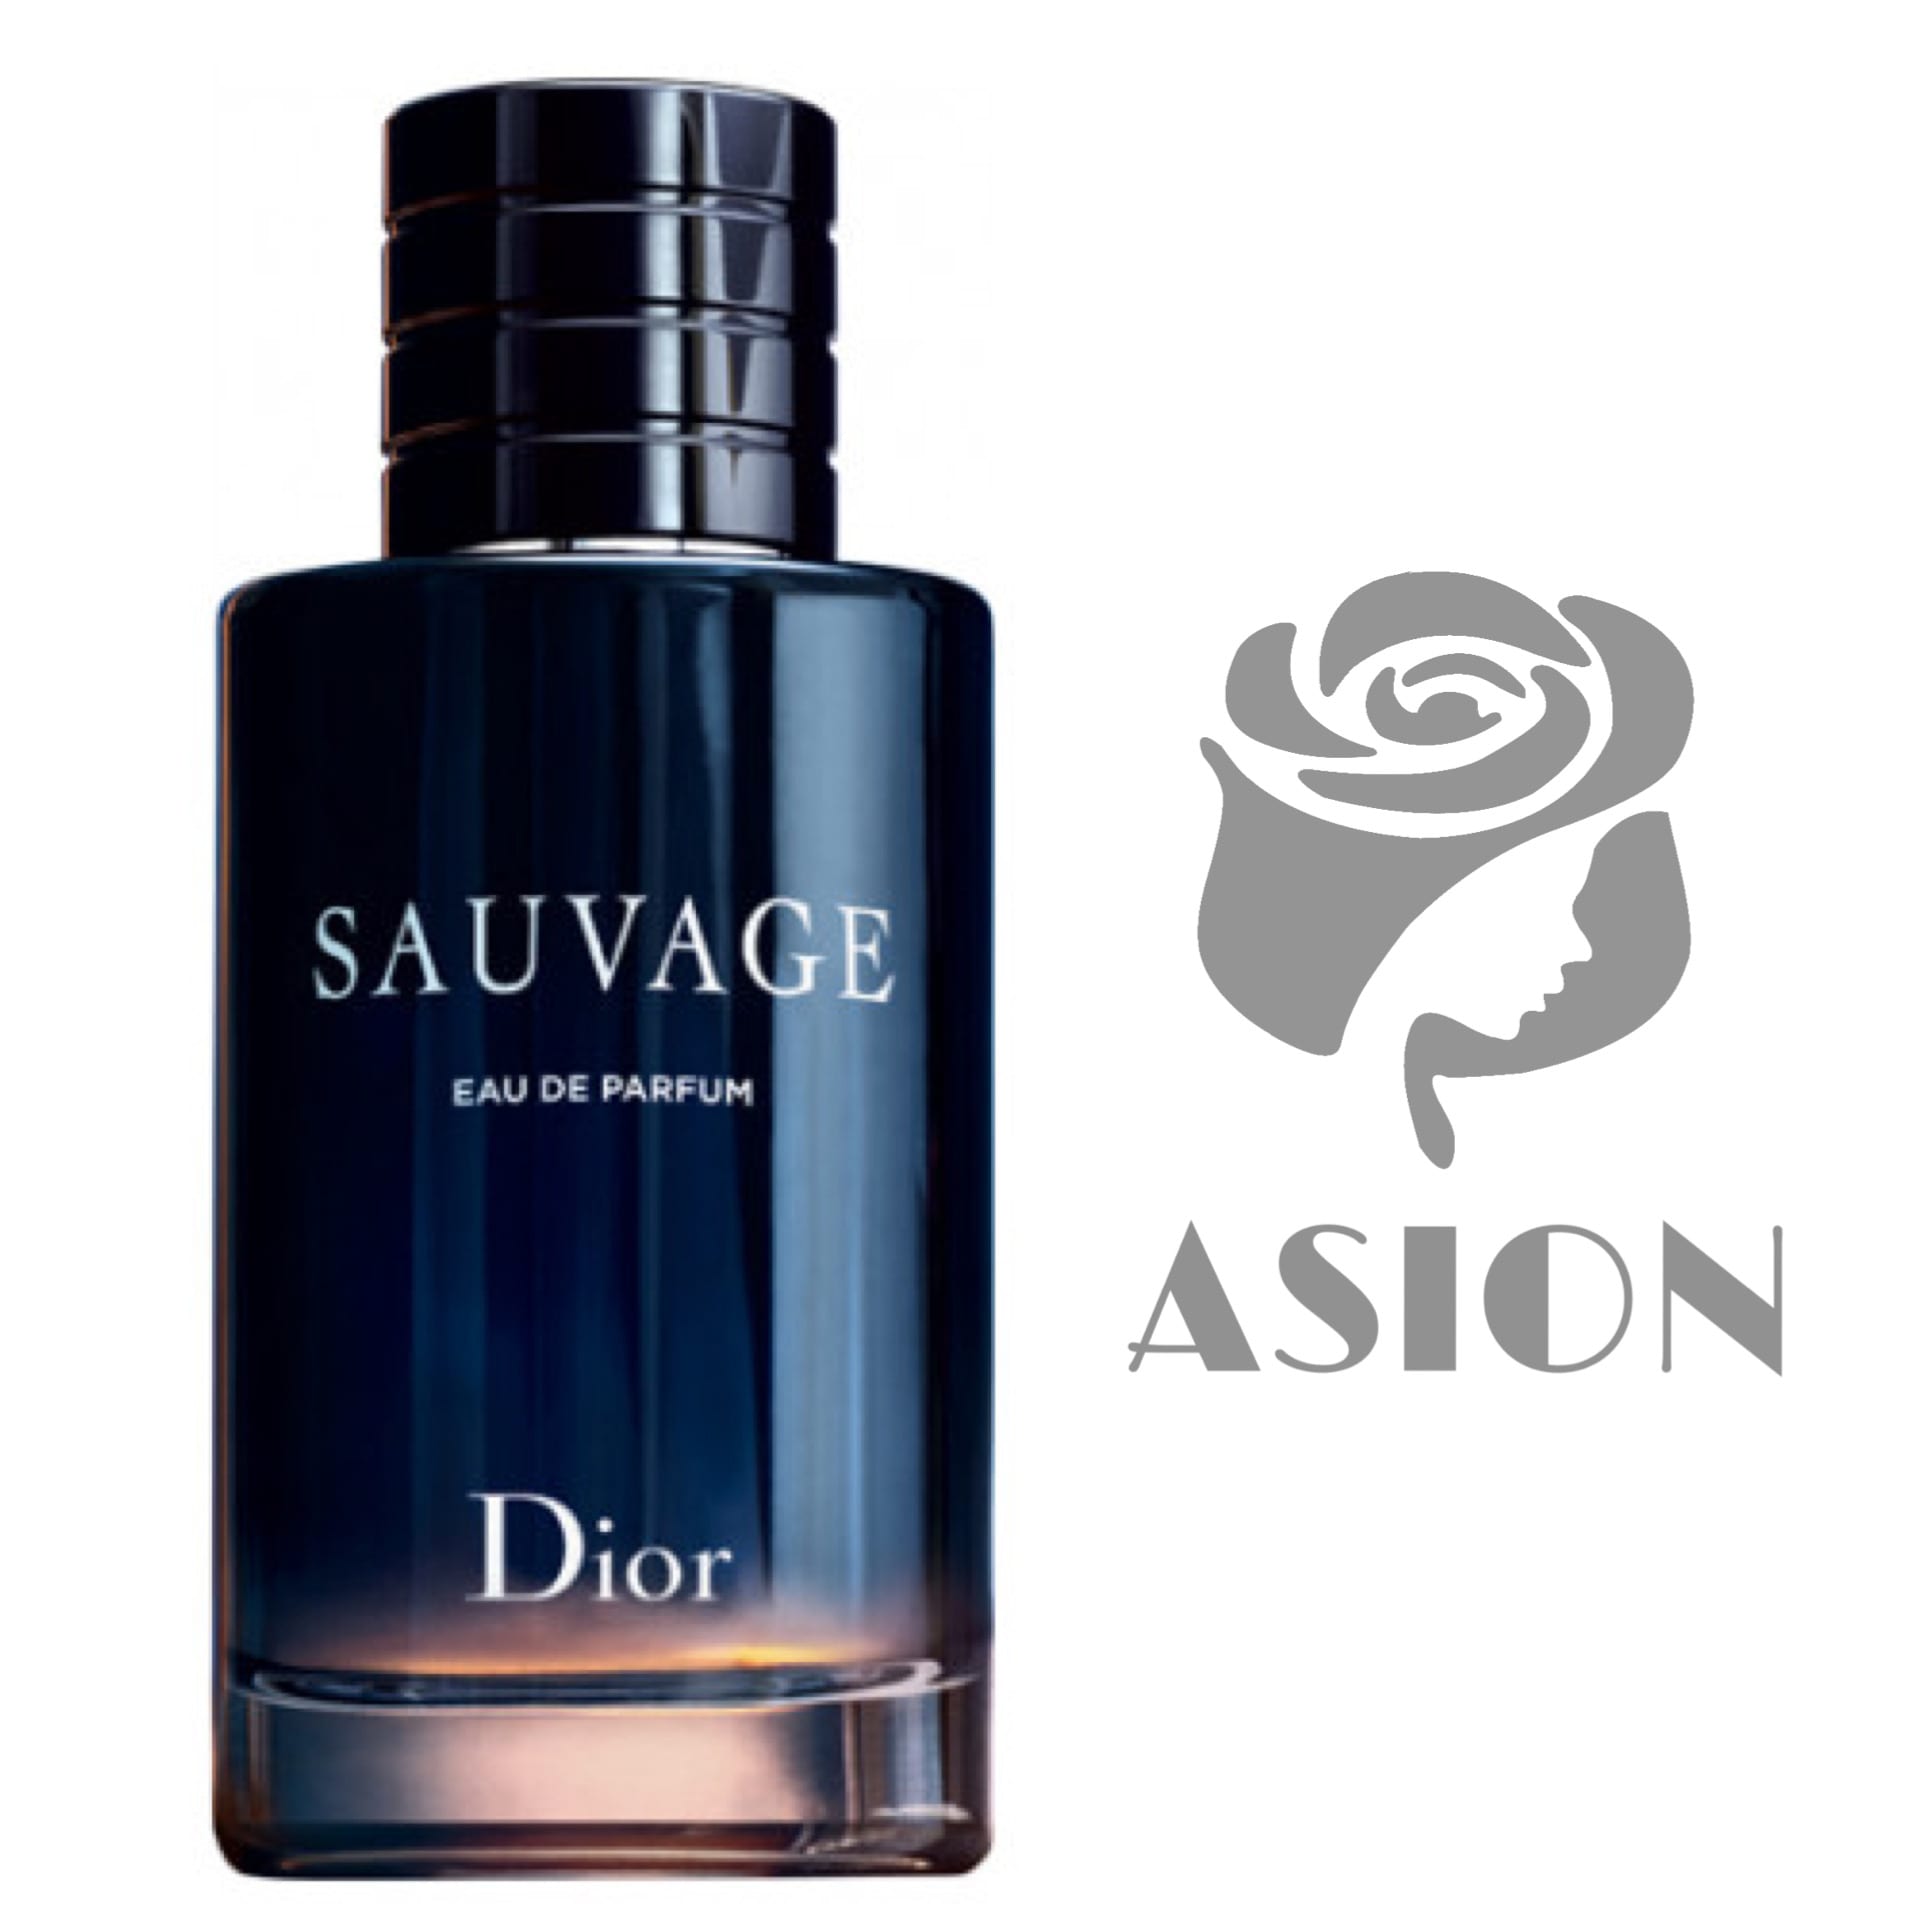 عطر ادکلن دیور ساواج ادو پرفیوم Dior Sauvage Eau de Parfum - آسیون